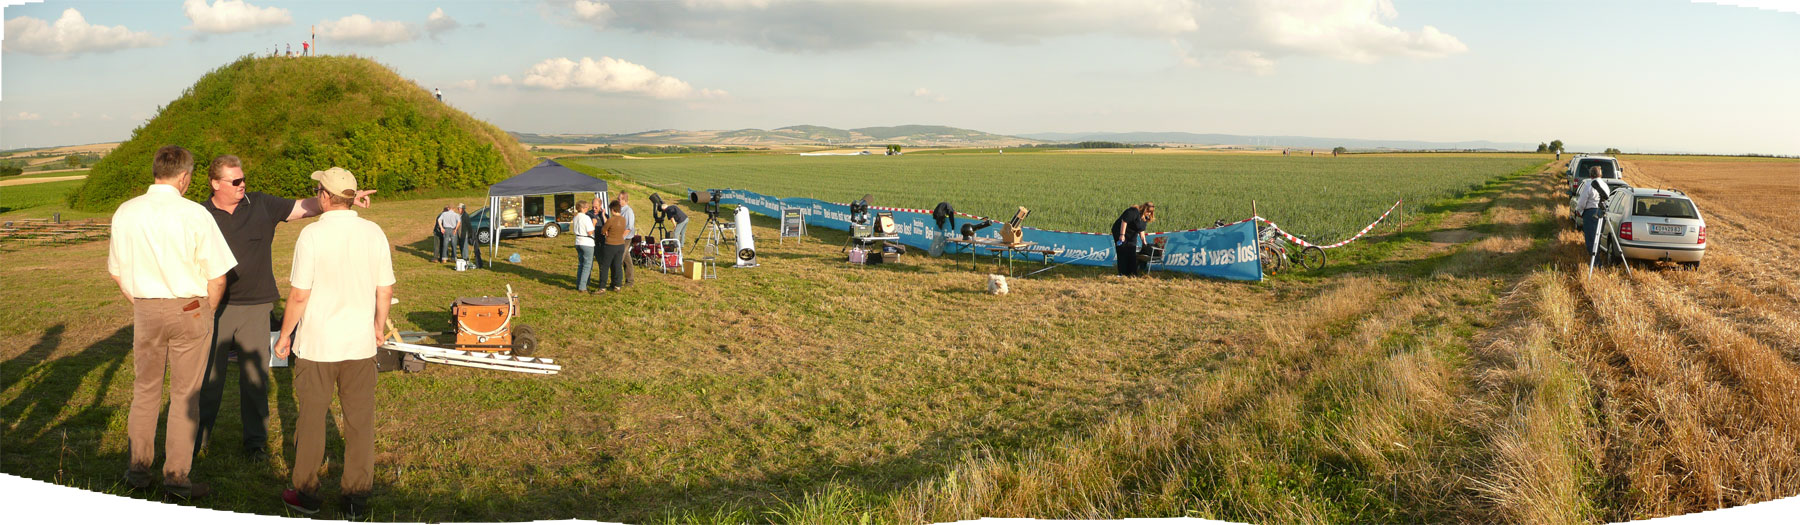 Aufbau: Panoramablick über das Gelände